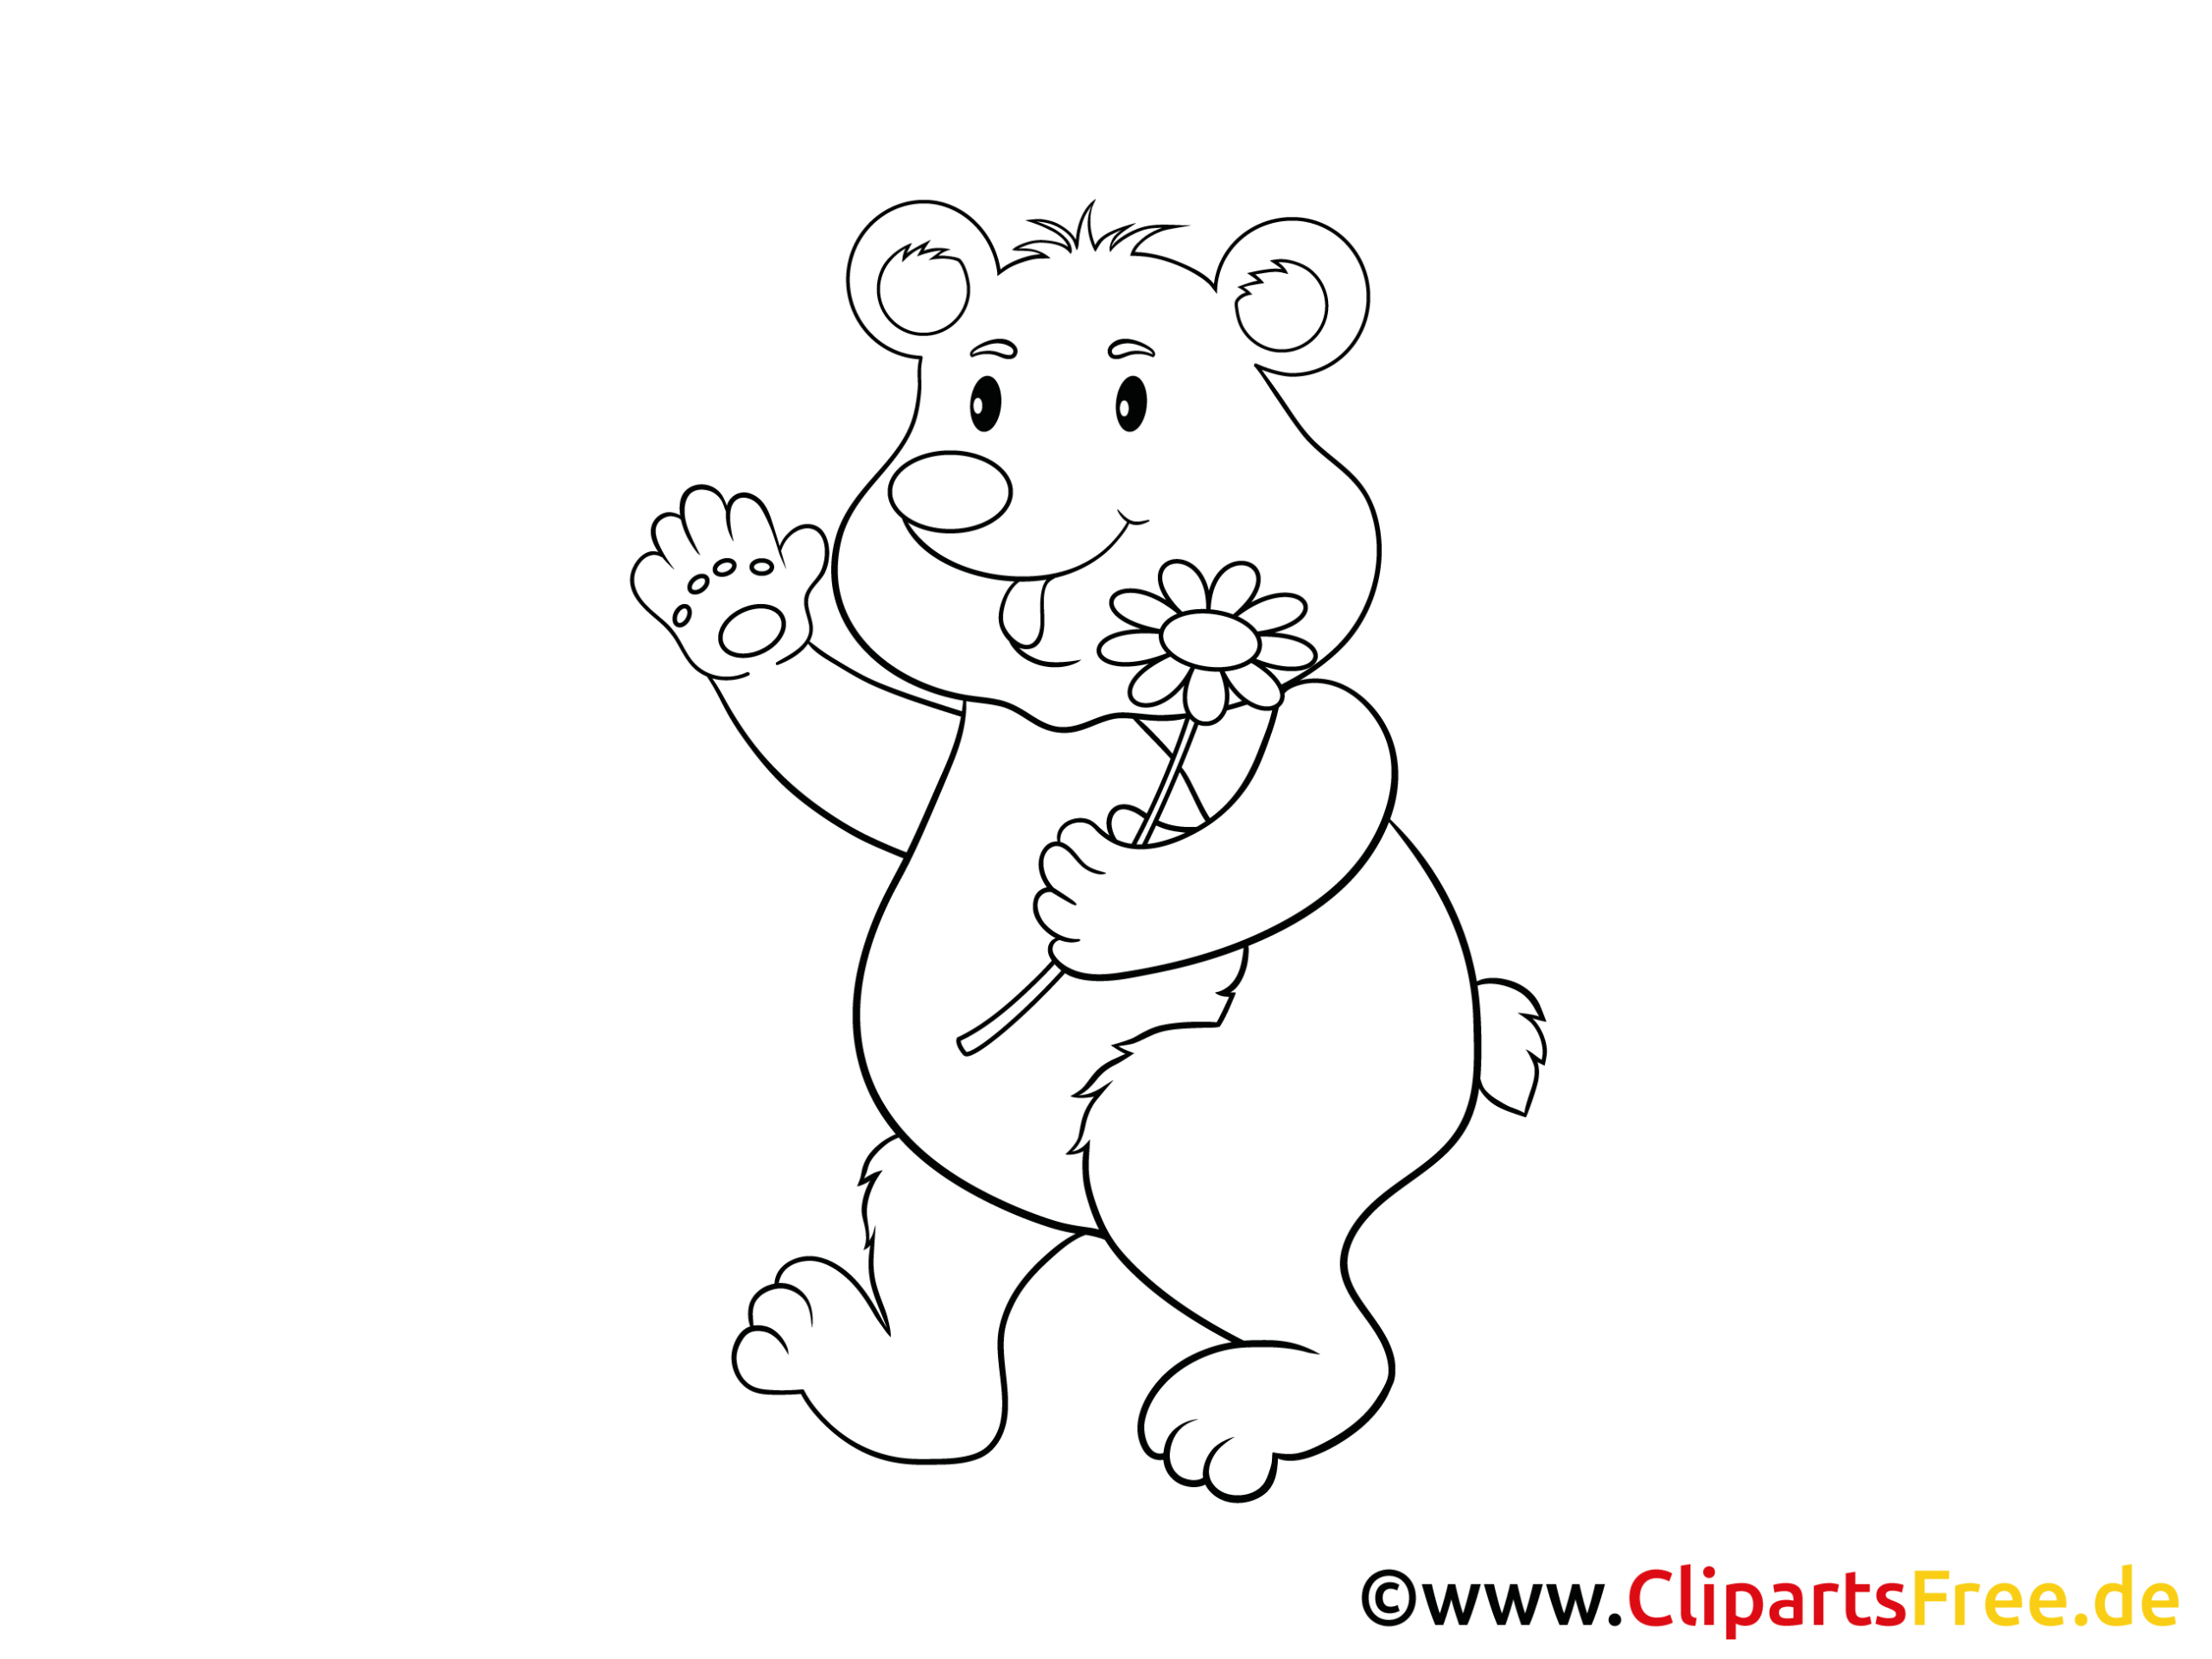 Bär, Bären Malvorlagen Zum Ausmalen Für Kinder über Kinder Bilder Zufolge Zum Ausmalen